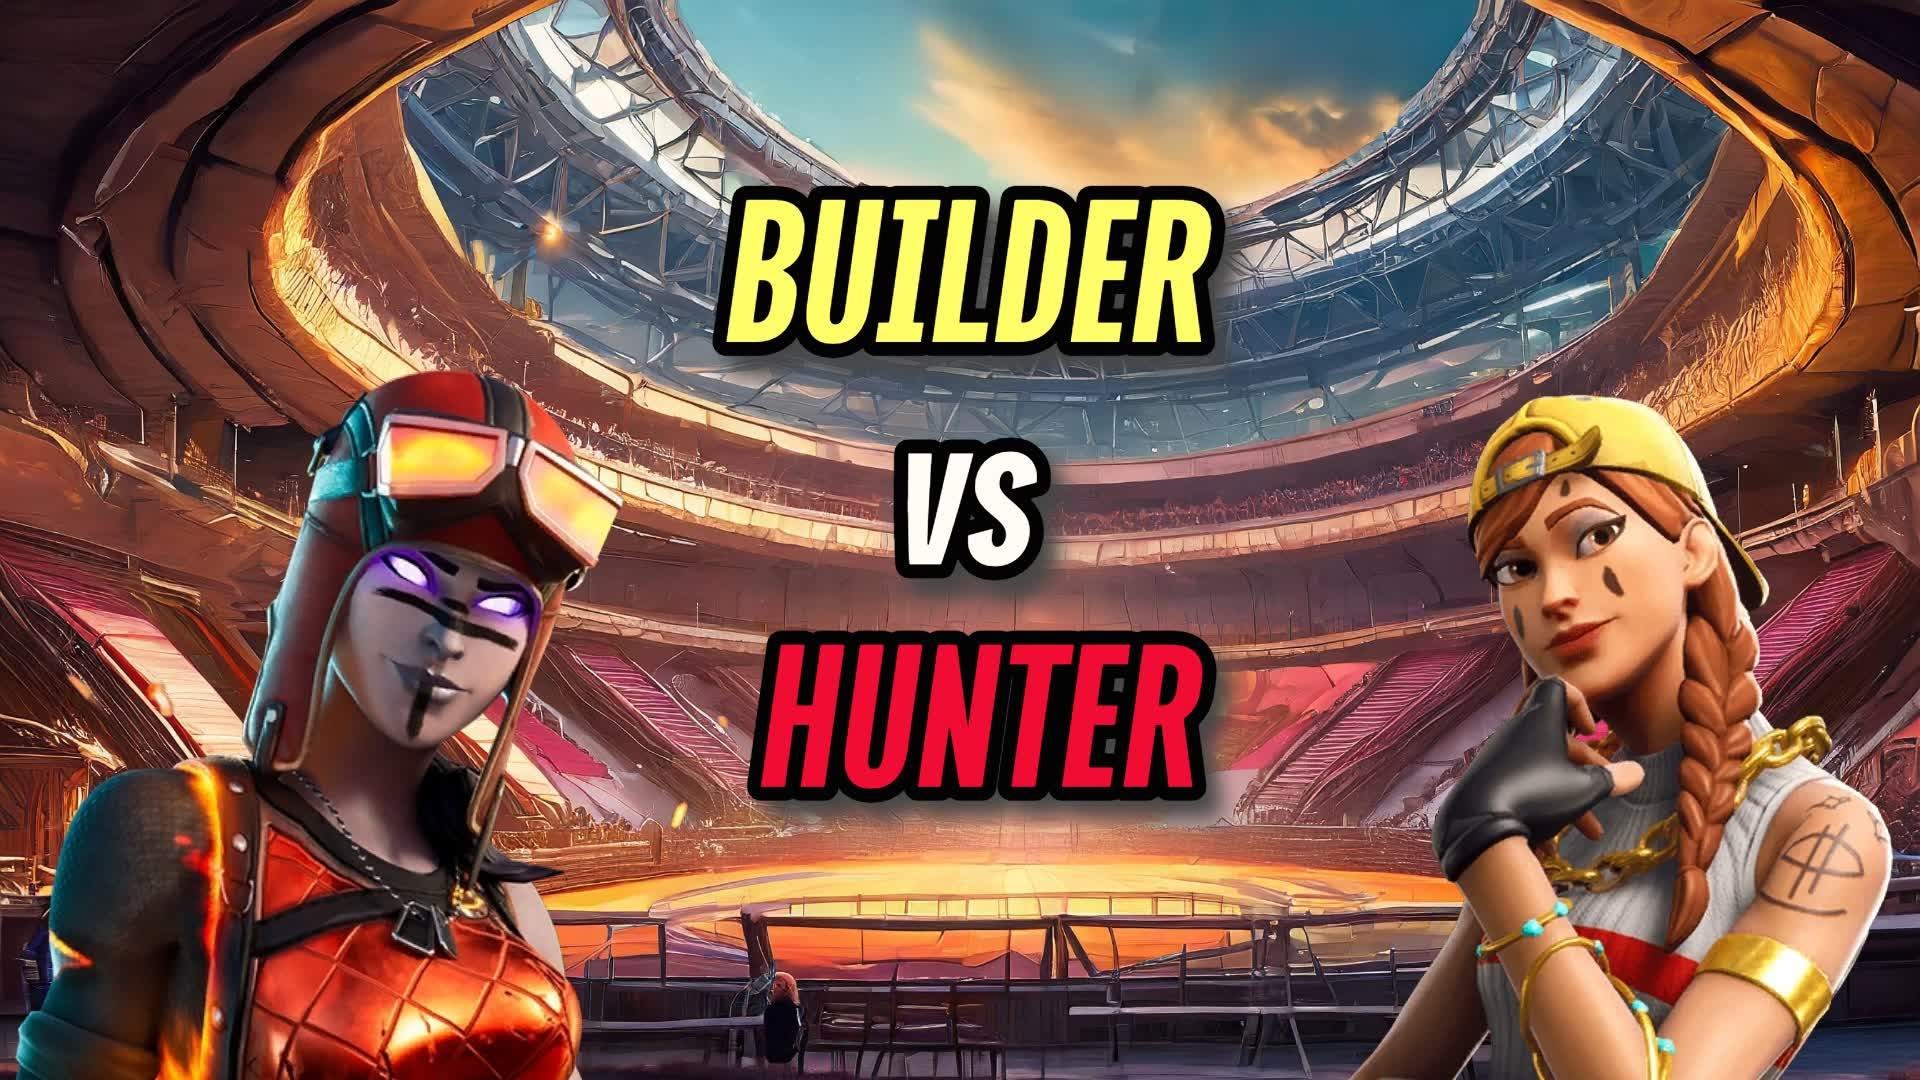 1v1 - Builder vs Hunter